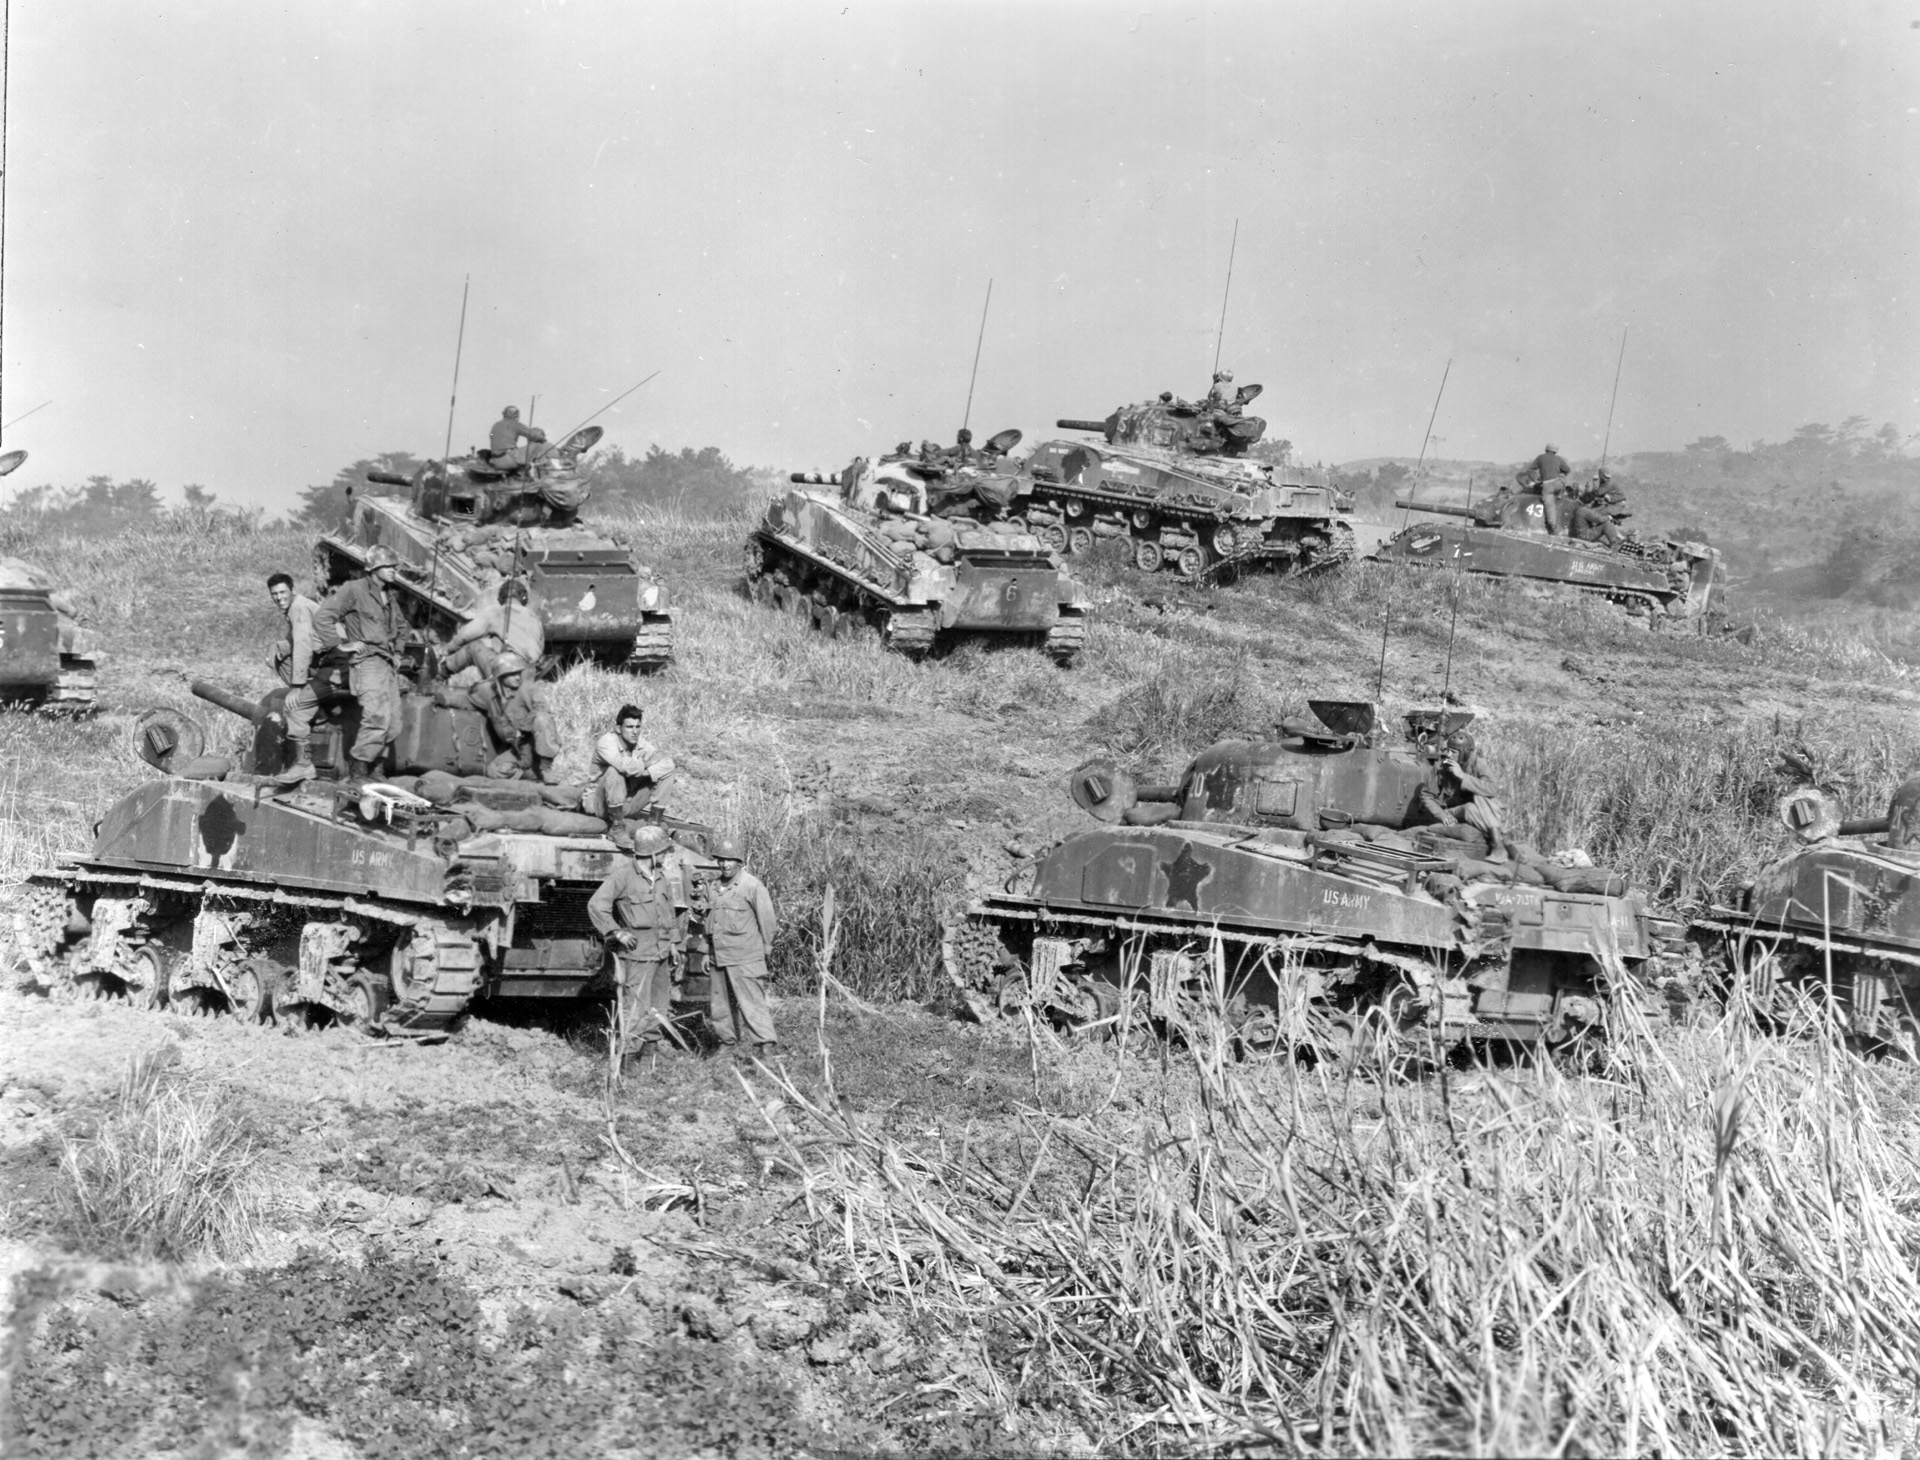 1945年4月，冲绳，美军第193坦克营的一组坦克在返回战斗前在M4谢尔曼坦克上和周围休息。注意坦克侧面的白色星星被涂掉了，以减少敌人的可见度。尽管如此，日本异常强大的抵抗还是使美国的坦克和油轮损失惨重。